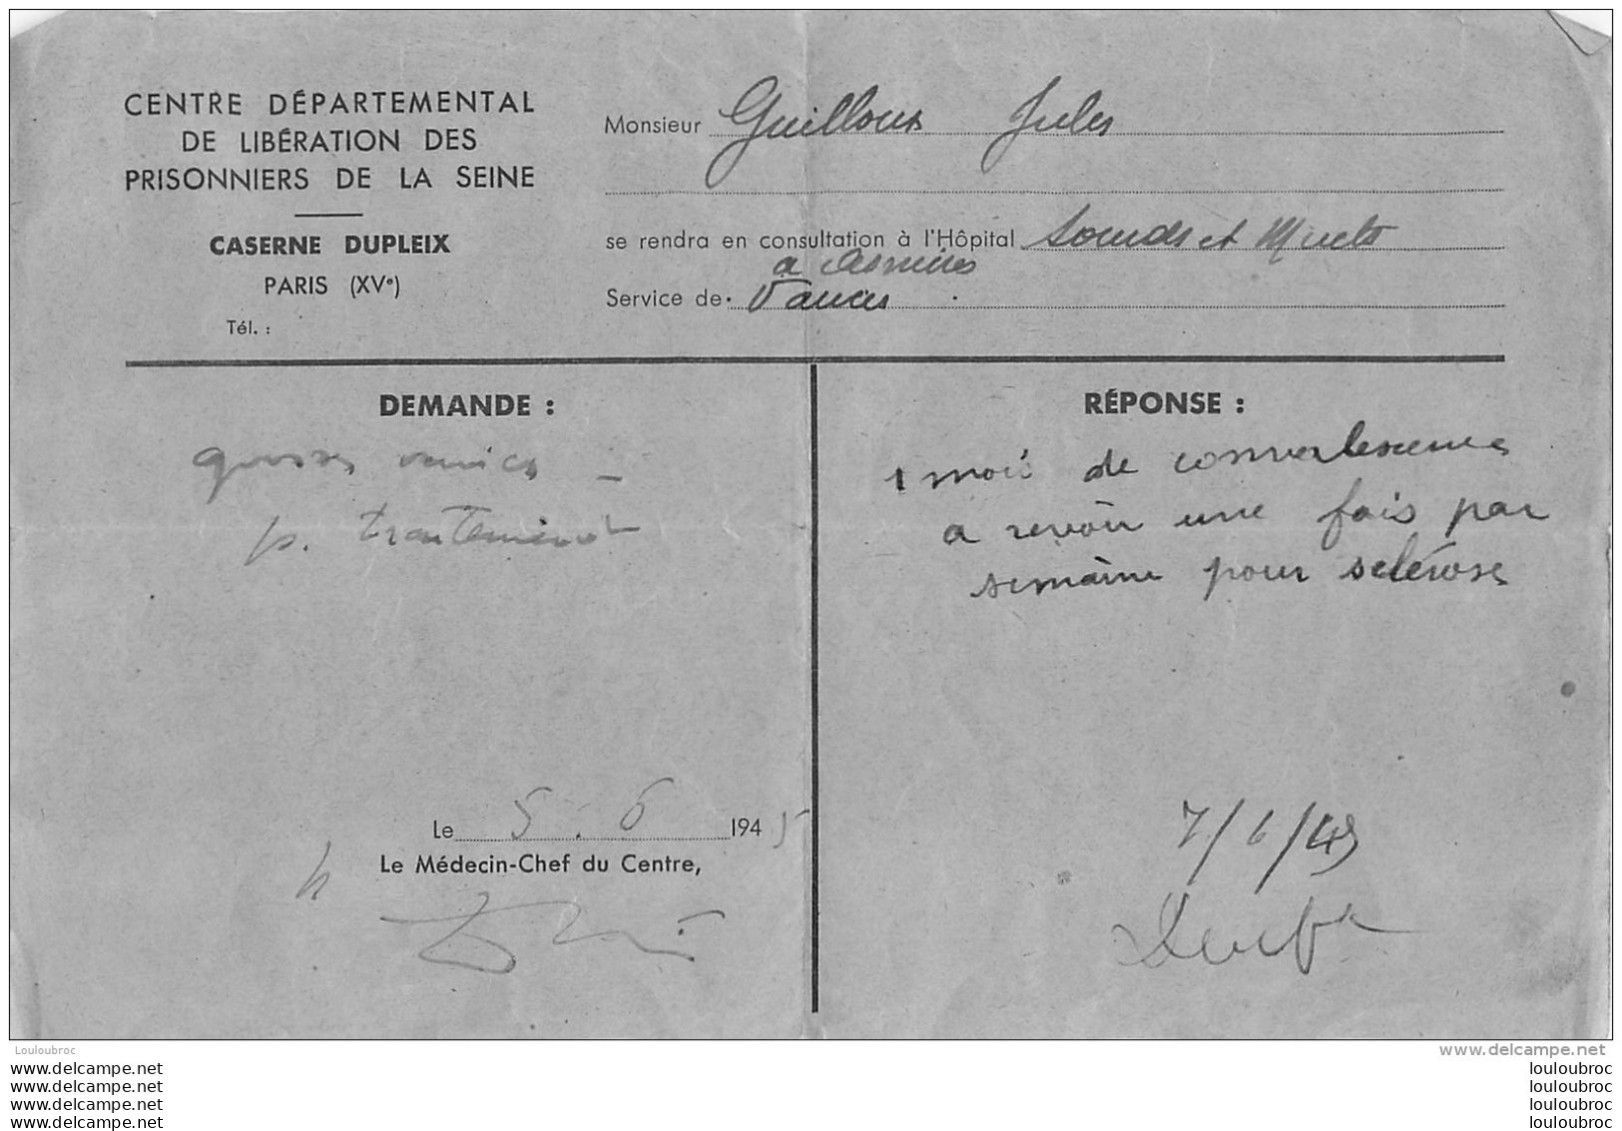 DOCUMENT CENTRE DEPARTEMENTAL DE LIBERATION DES PRISONNIERS DE LA SEINE CASERNE DUPLEIX 1945 - Historical Documents